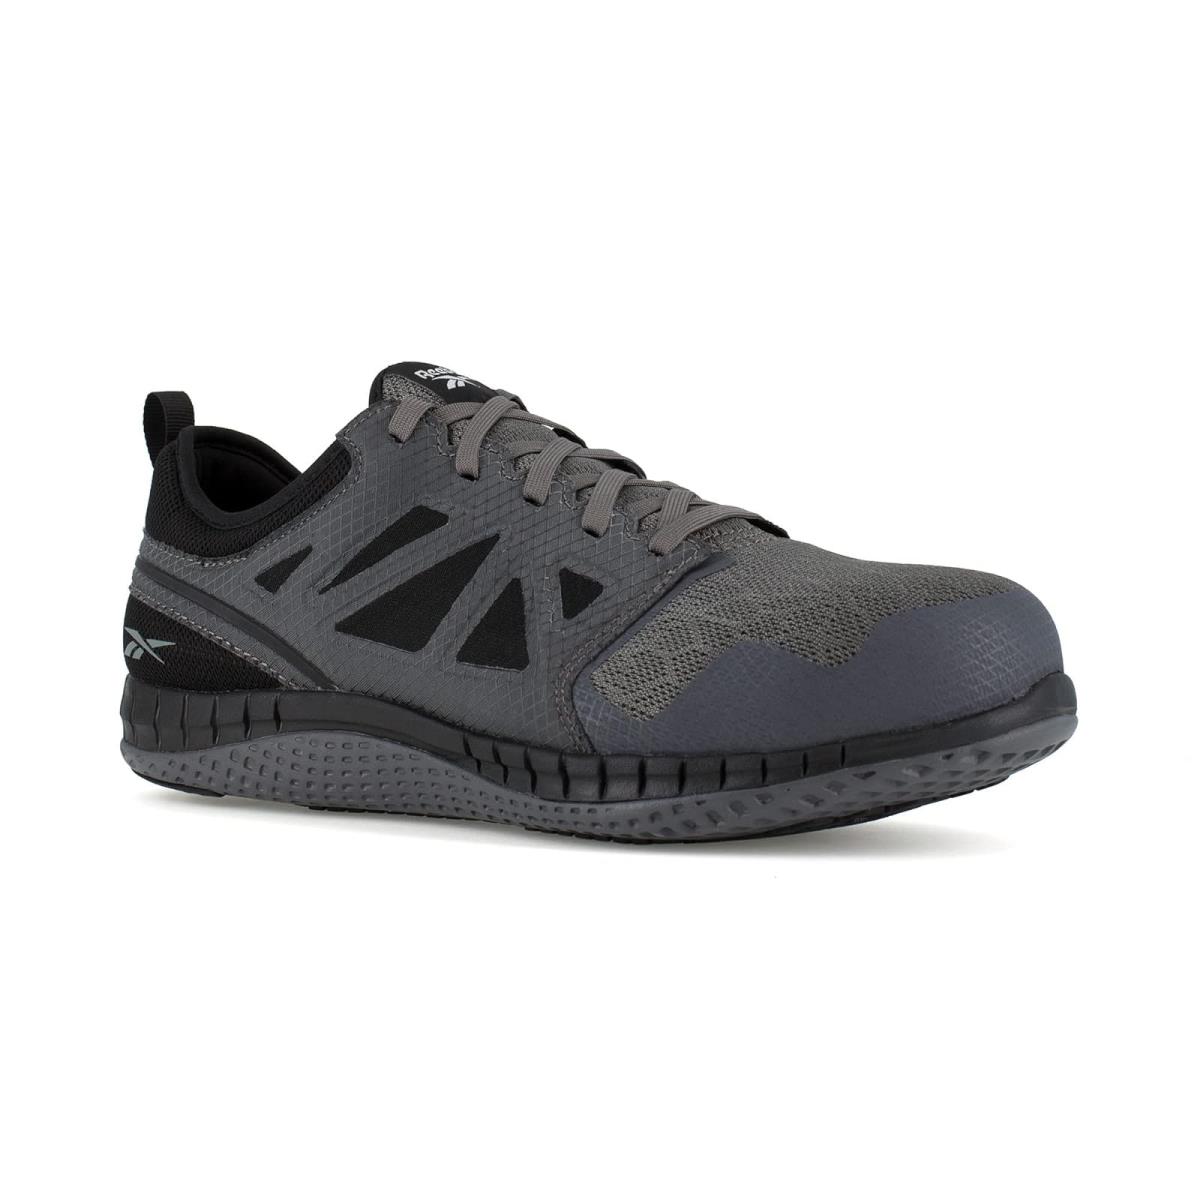 Man`s Sneakers Athletic Shoes Reebok Work Zprint Work Dark Grey/Black